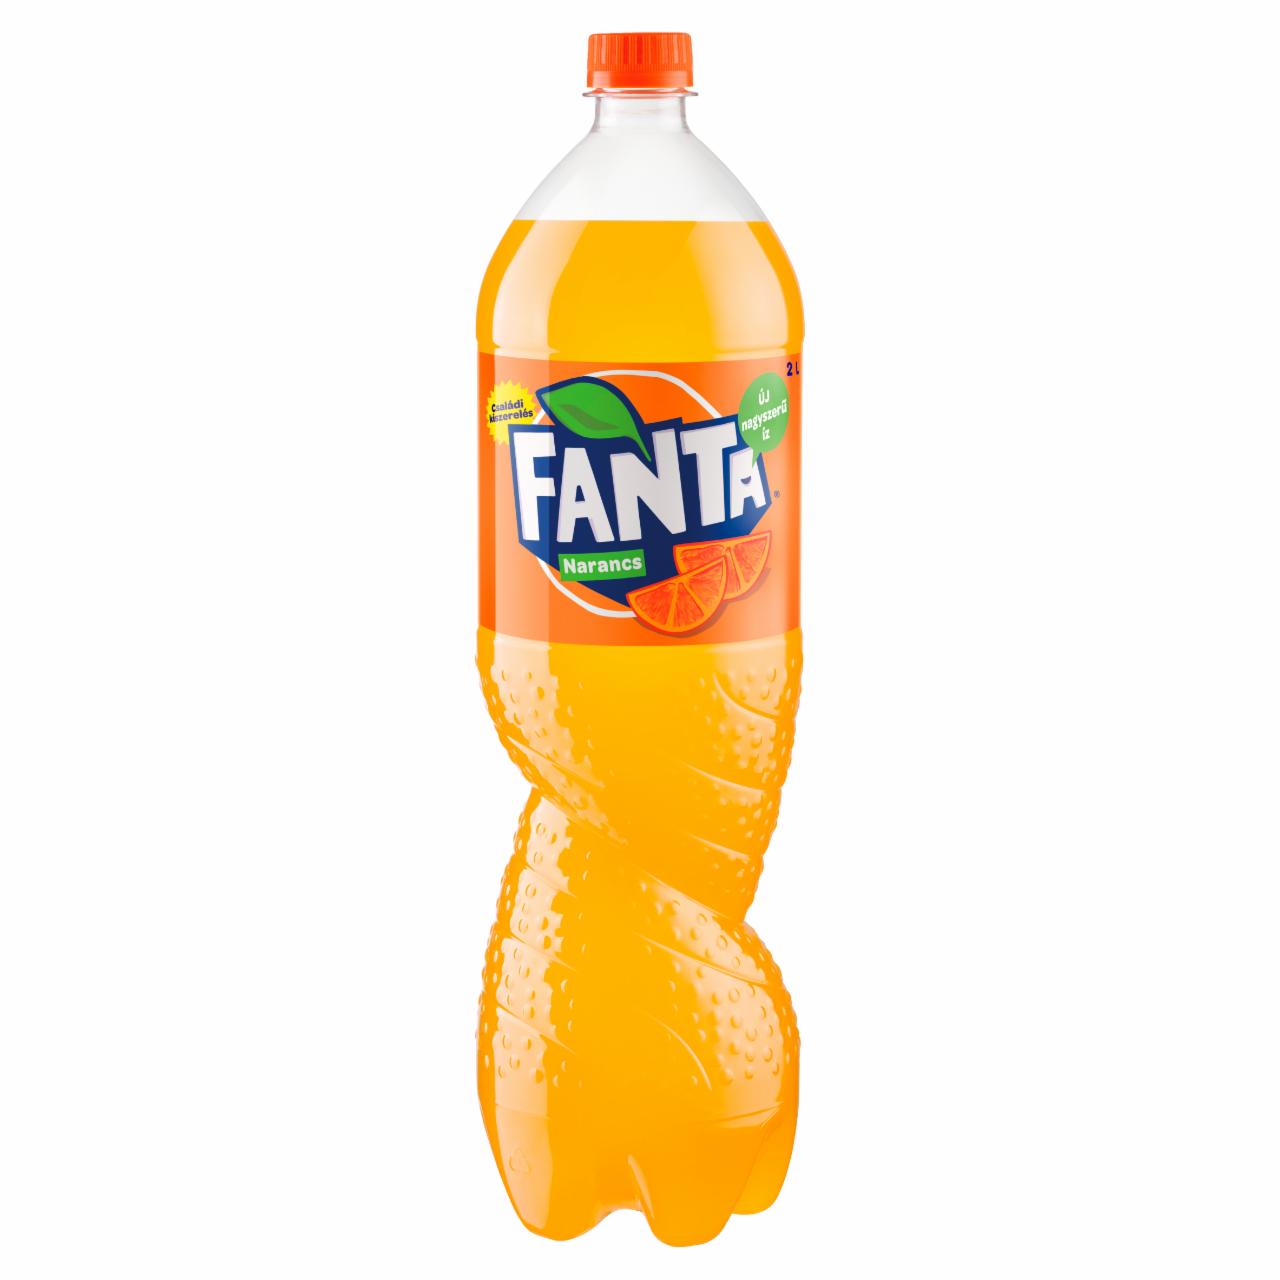 Képek - Fanta narancs ízű szénsavas üdítőital cukorral és édesítőszerekkel 2 l